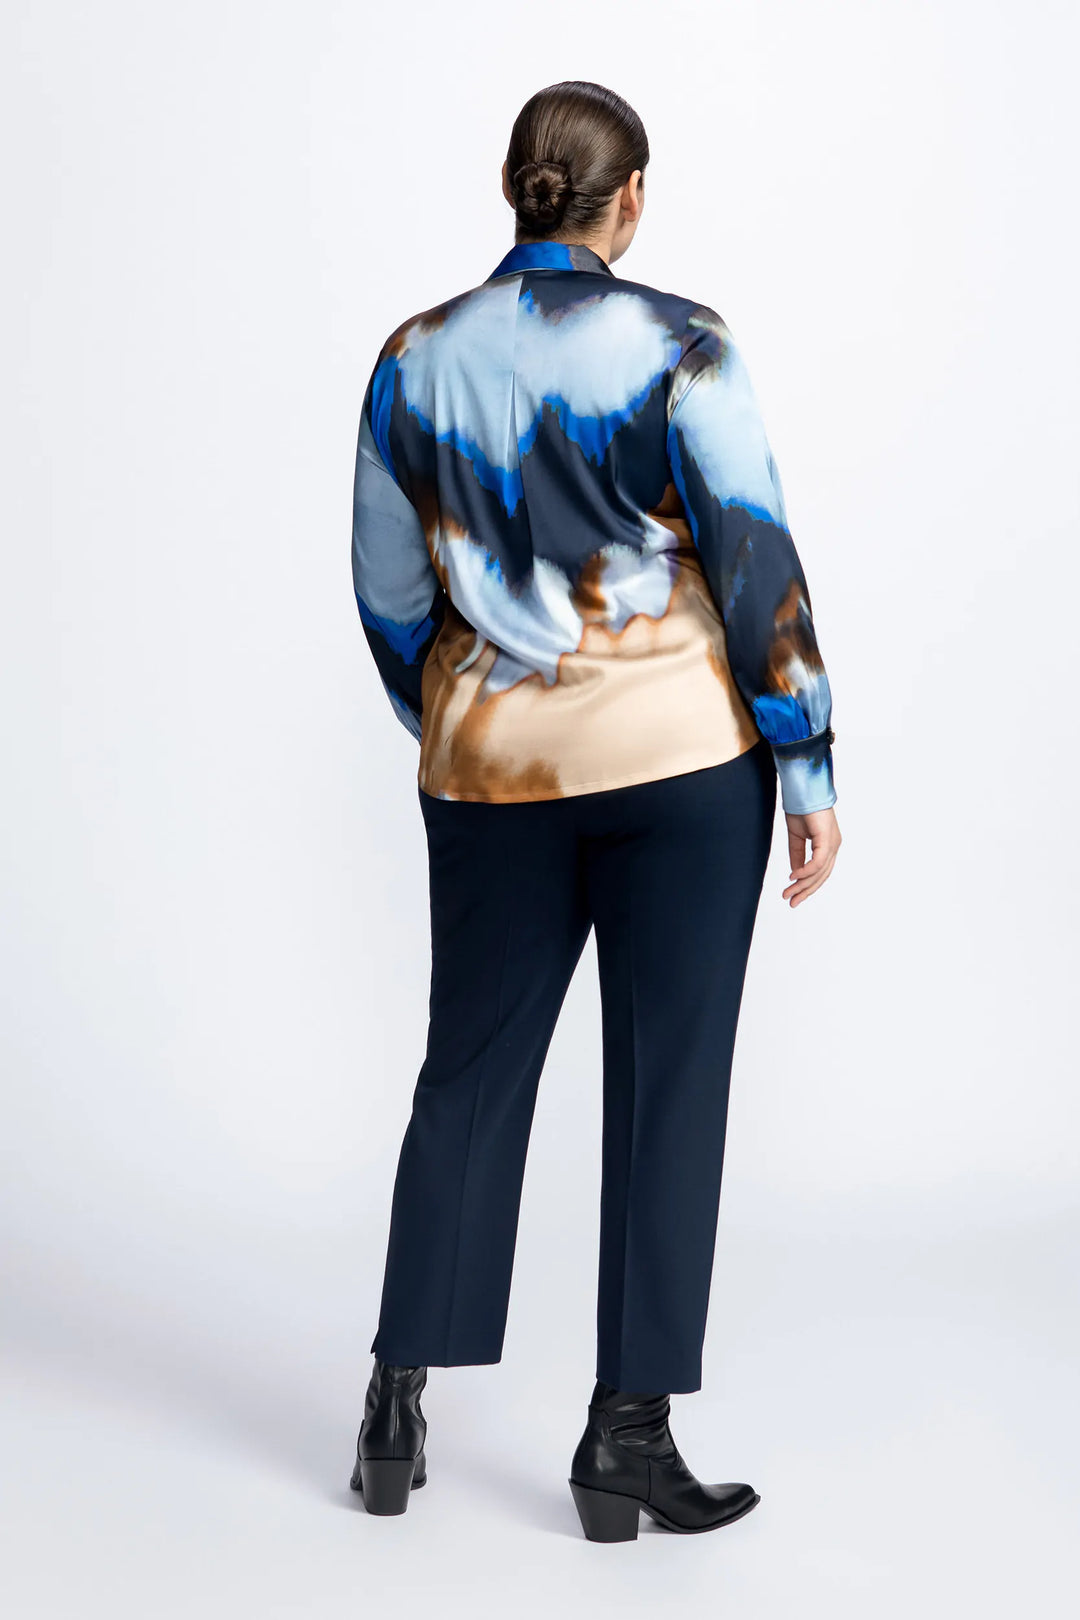 satijnen blouse met prachtige print - xandres - himio - grote maten - dameskleding - kledingwinkel - herent - leuven